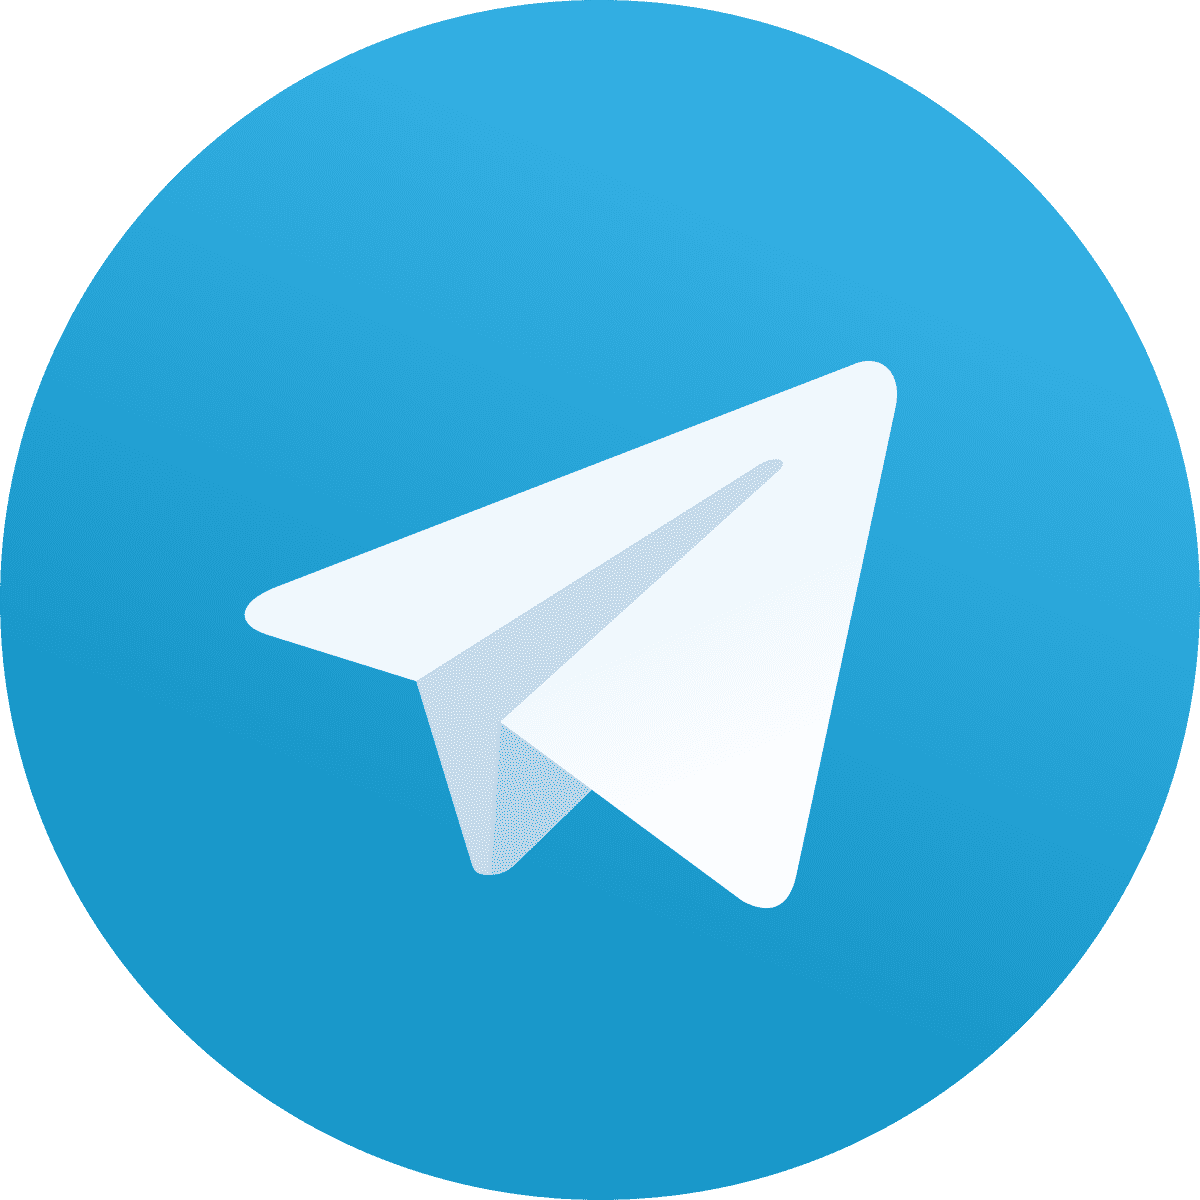 Dailyforex Com Launches Telegram Channels In 4 Languages Dailyforex - 